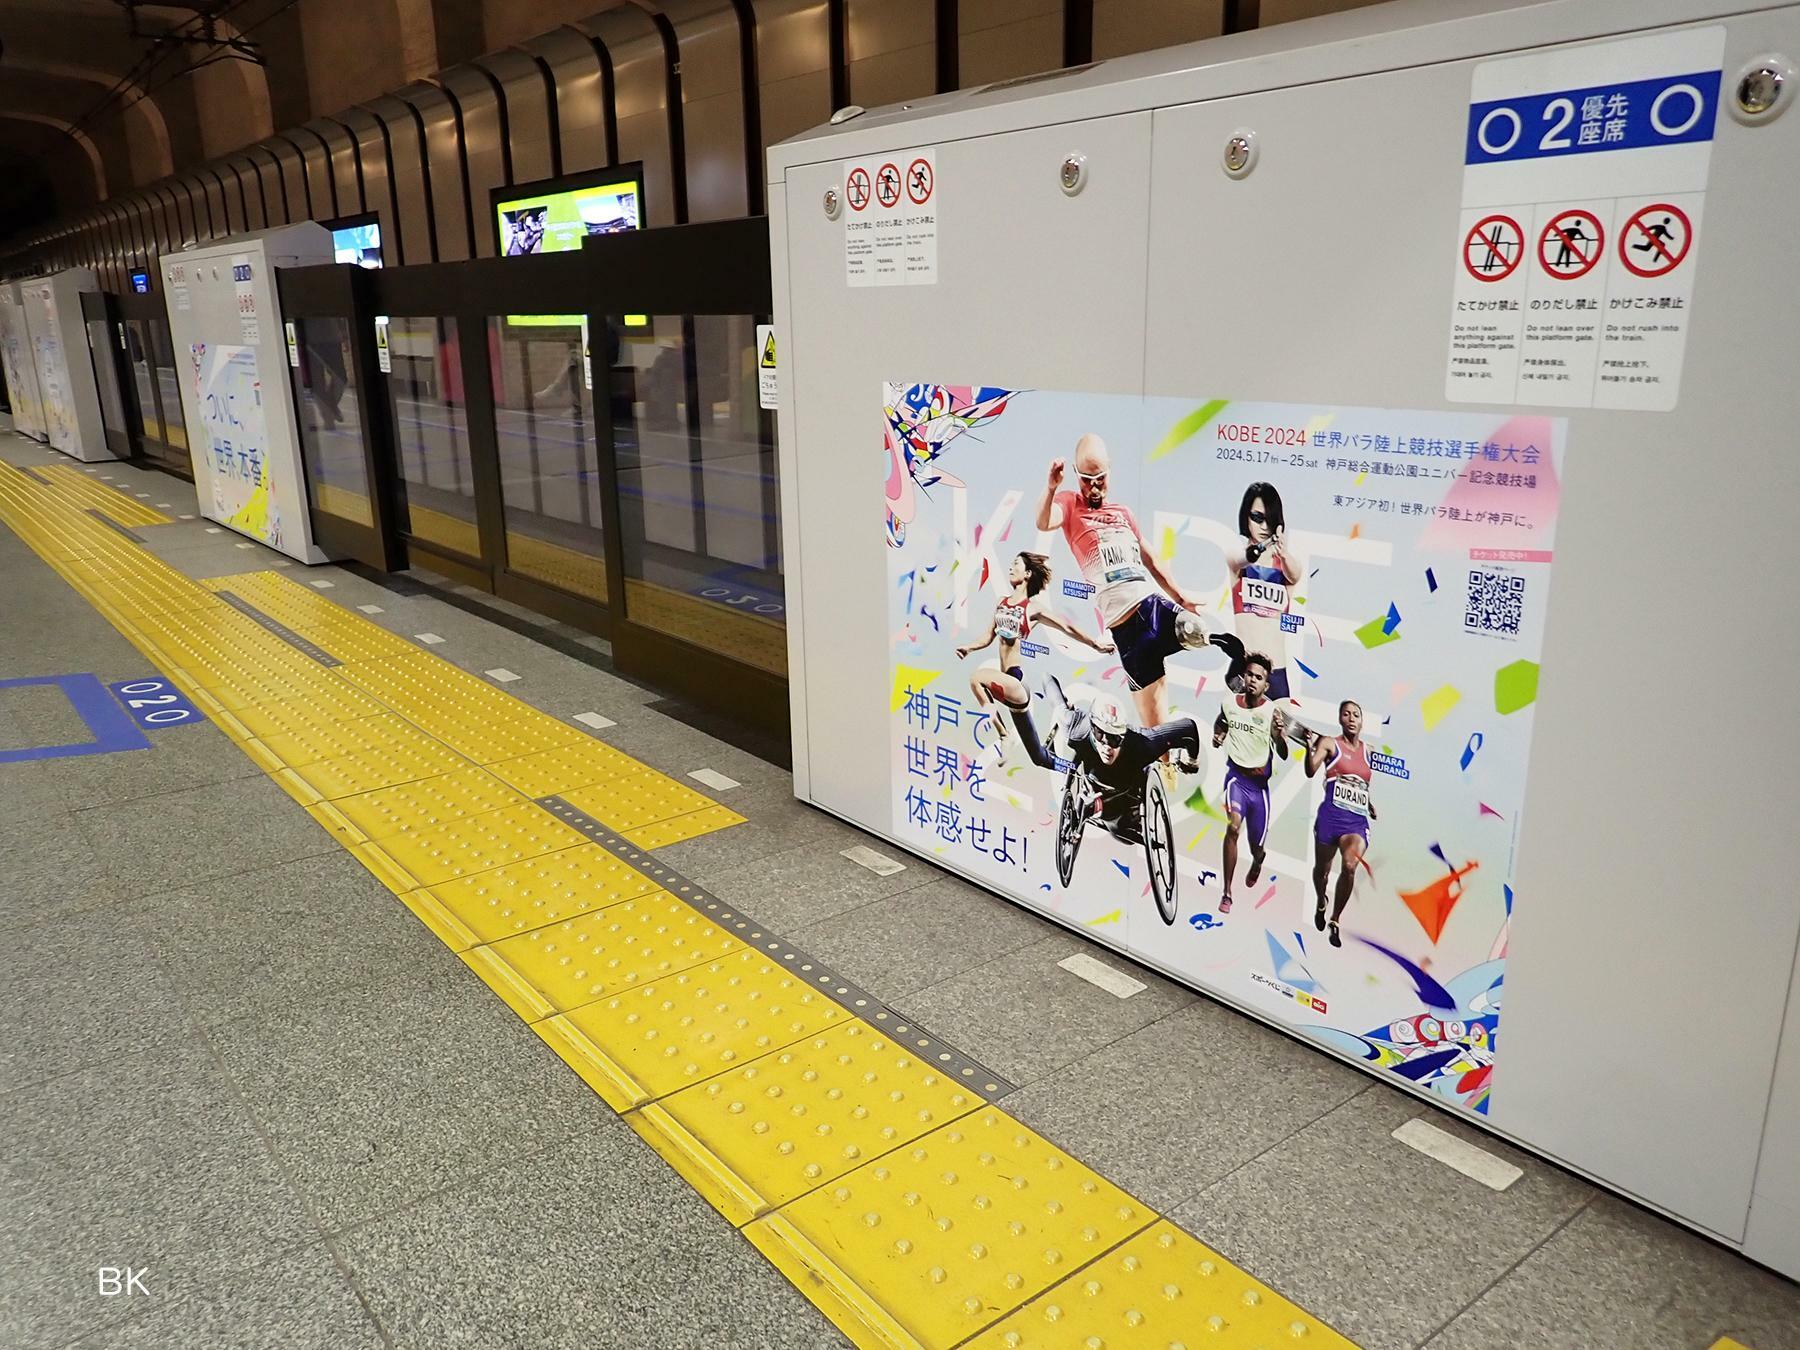 阪神電車三宮駅のホーム柵に貼られたポスター。